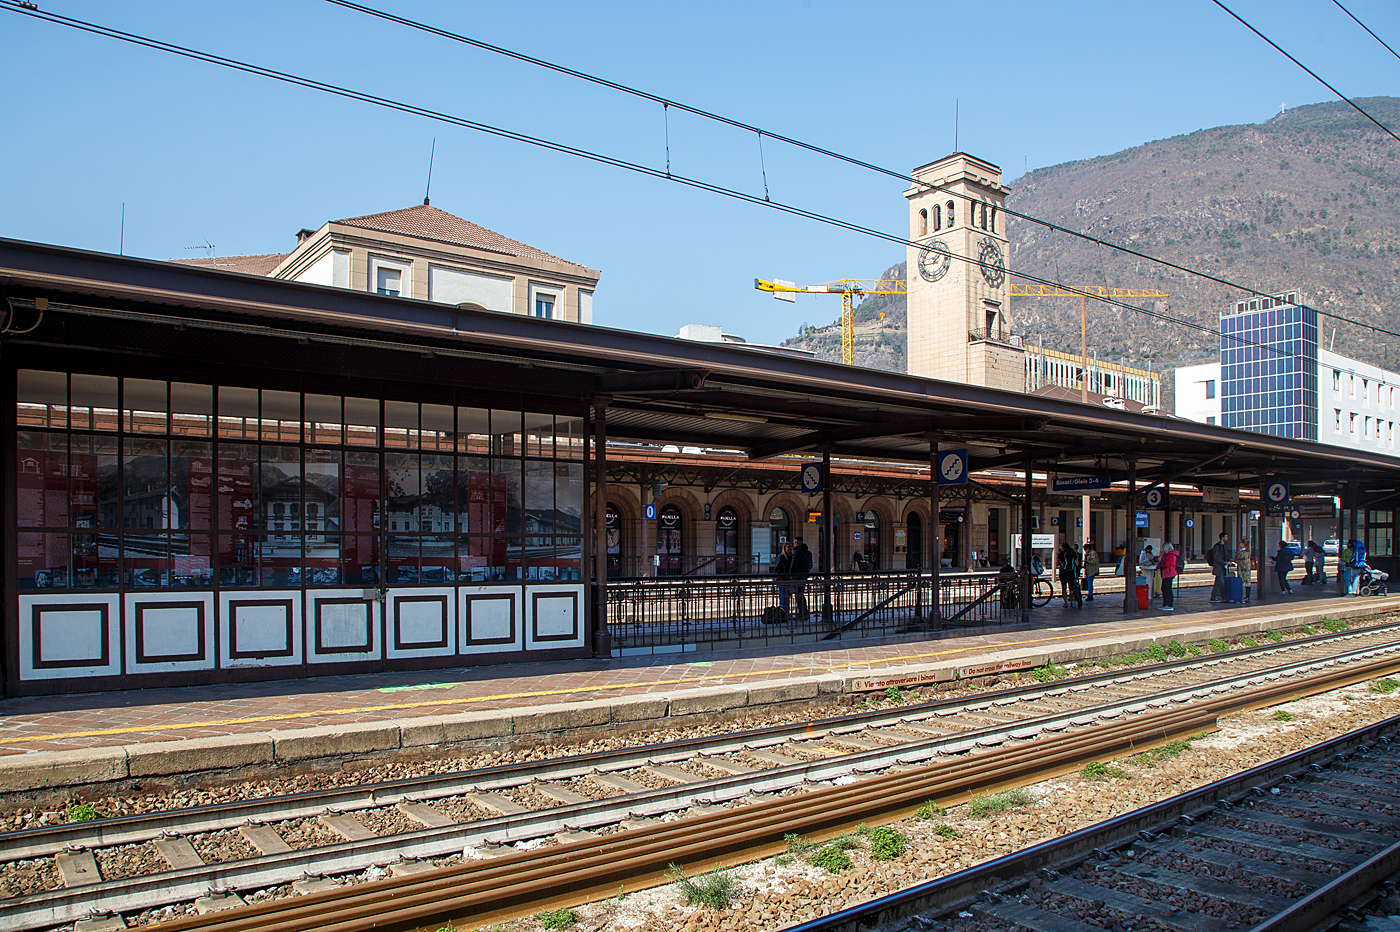 Der Bahnhof Bozen (italienisch Stazione di Bolzano) am 26 März 2022.

Der Bahnhof Bozen ist mit 5,5 Millionen Fahrgästen jährlich der bedeutendste Bahnhof der Region Trentino-Südtirol in Italien.Bozen, die Hauptstadt Südtirols, ist ein wichtiger Verkehrsknotenpunkt auf der Nord-Süd-Achse der Brennerbahn, die Innsbruck mit Verona verbindet. Zudem beginnt die Bahnstrecke Bozen–Meran im Bahnhof Bozen, womit er die Funktion eines Trennungsbahnhofs hat. 

Der Bahnhof befindet sich auf 265 m Höhe im Nordosten des Bozner Talkessels zwischen dem historischen Zentrum und dem Eisack. Von hier aus schnell erreichbar sind insbesondere die nahe Altstadt, der zentrale Waltherplatz (5 Gehminuten)sowie das gegenüber vom Aufnahmsgebäude liegende Regierungsviertel mit dem Palais Widmann und dem Landtagsgebäude. Zum östlich gelegenen Stadtviertel Bozner Boden, den der Bahnhof vom Rest des Stadtgebiets trennt, gibt es hingegen keinen Zugang.